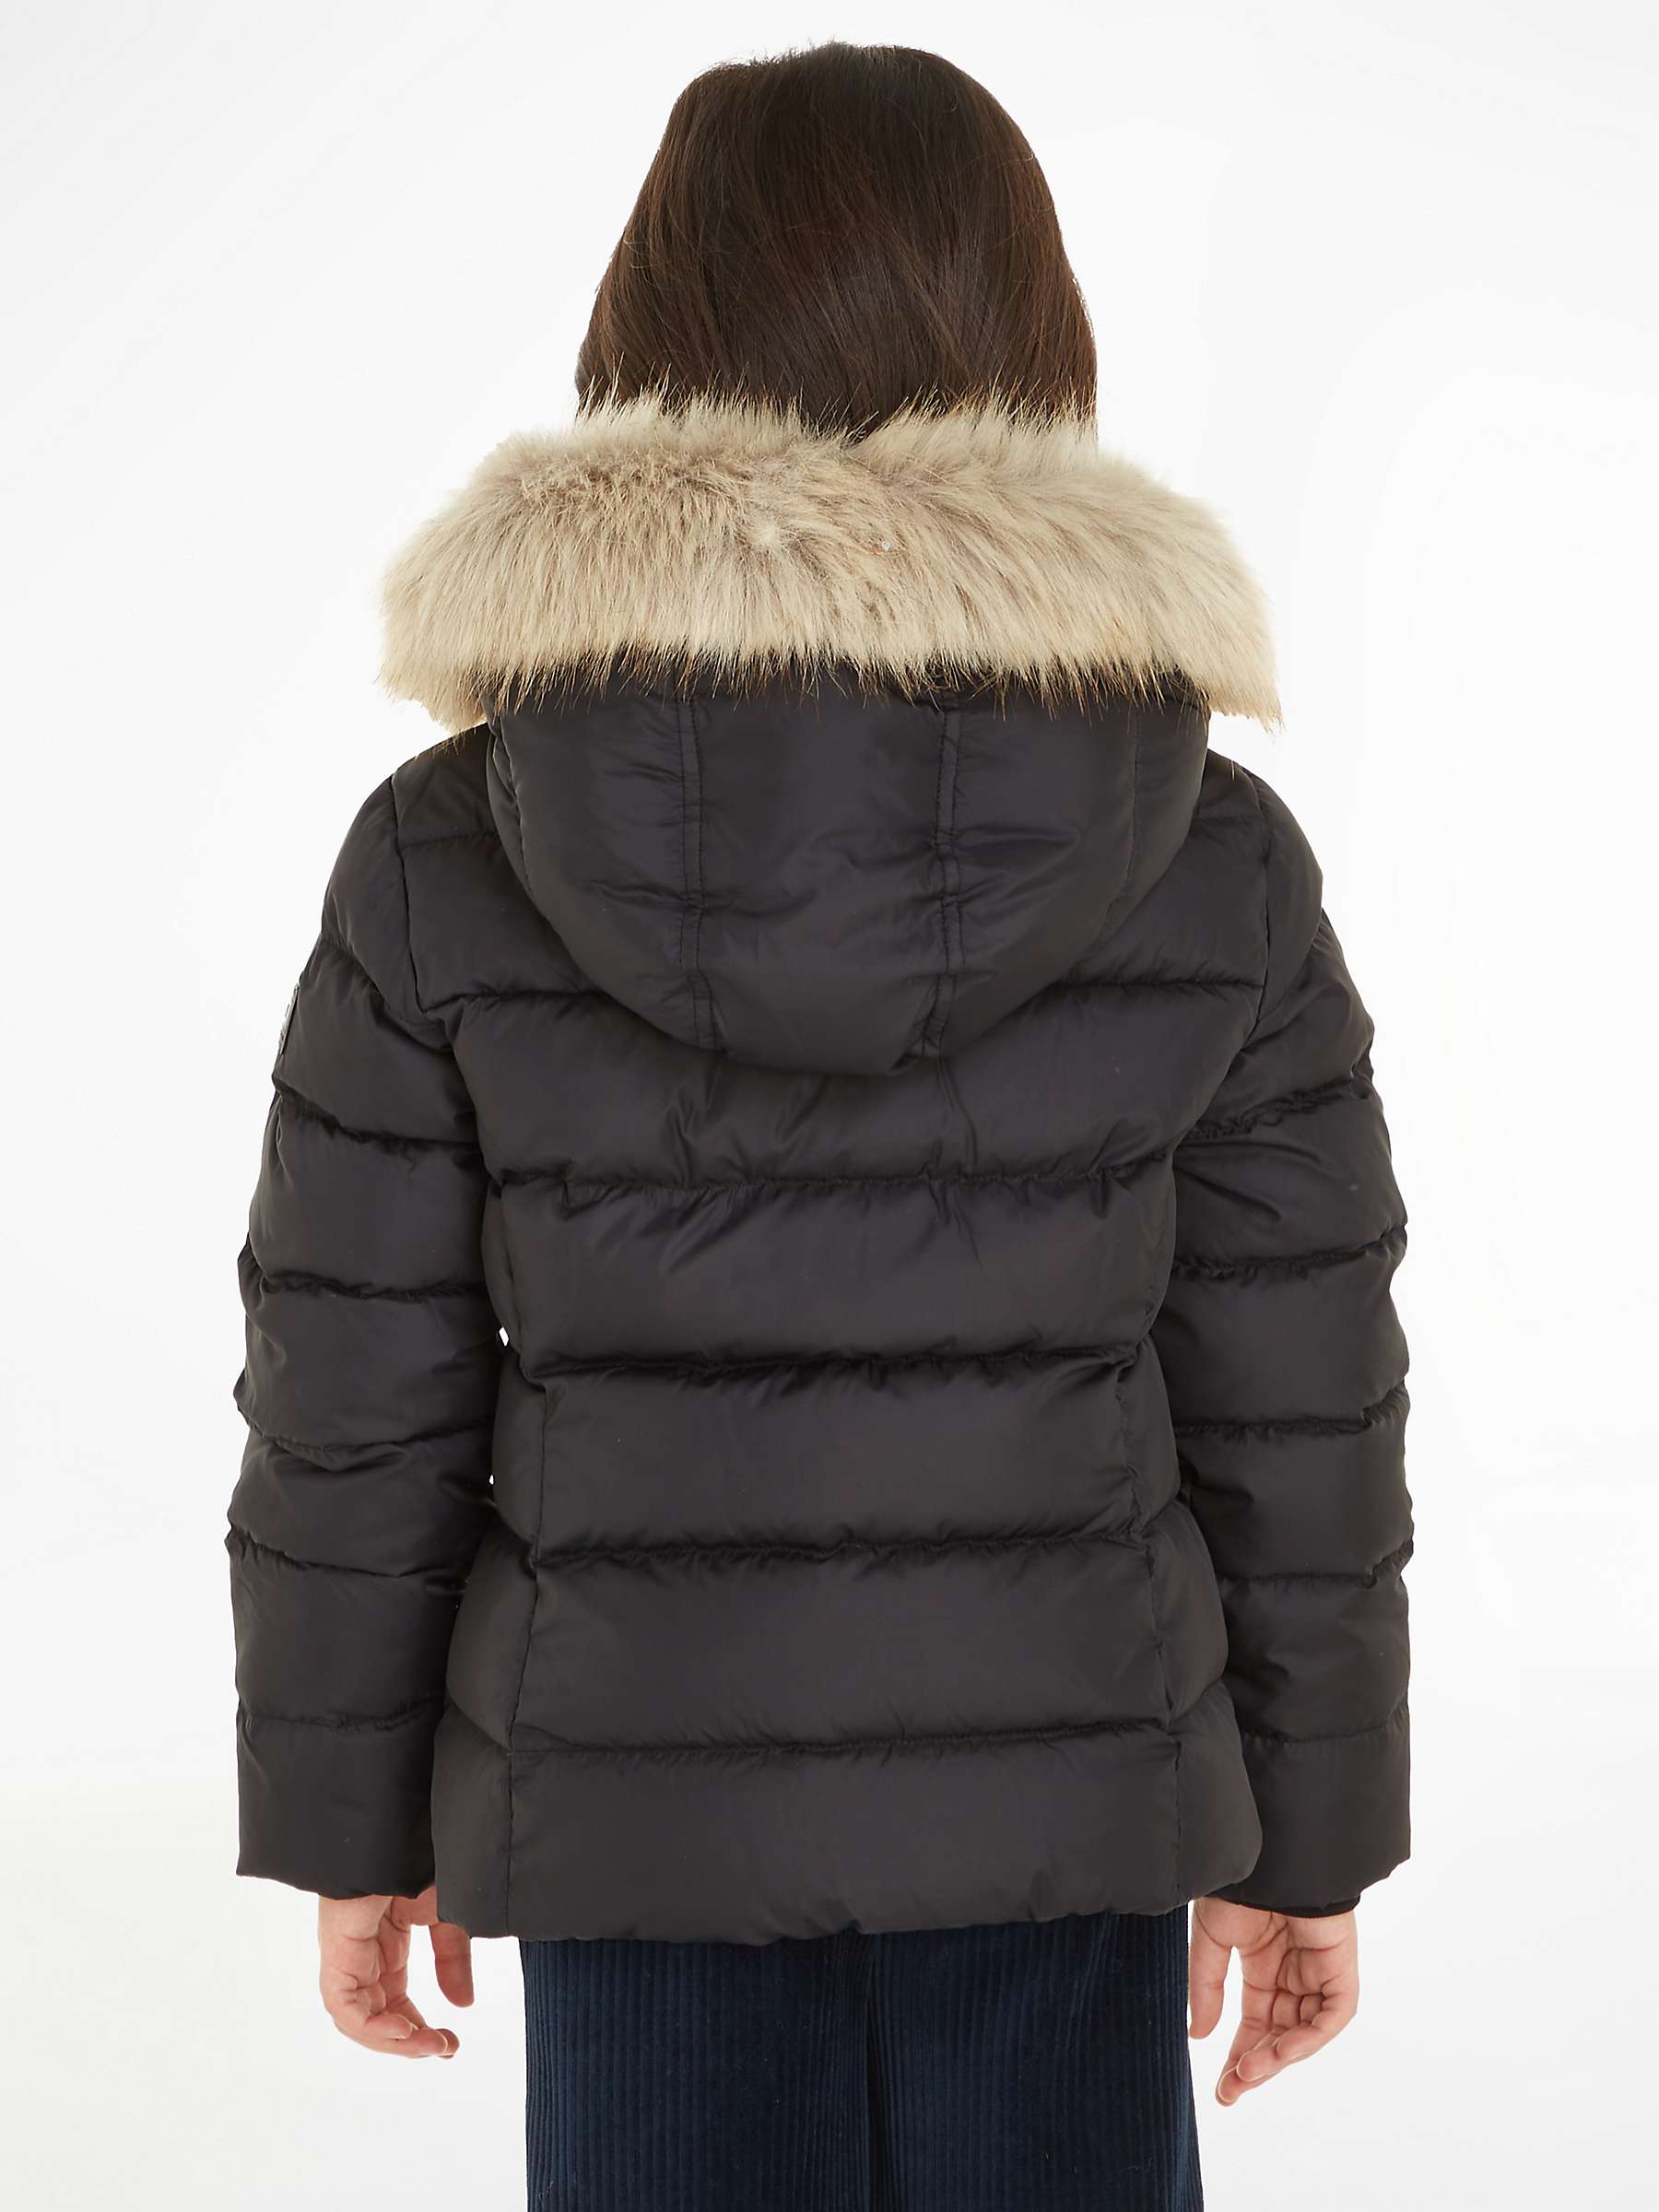 Buy Tommy Hilfiger Kids' Fur Hood Puffer Jacket, Black Online at johnlewis.com